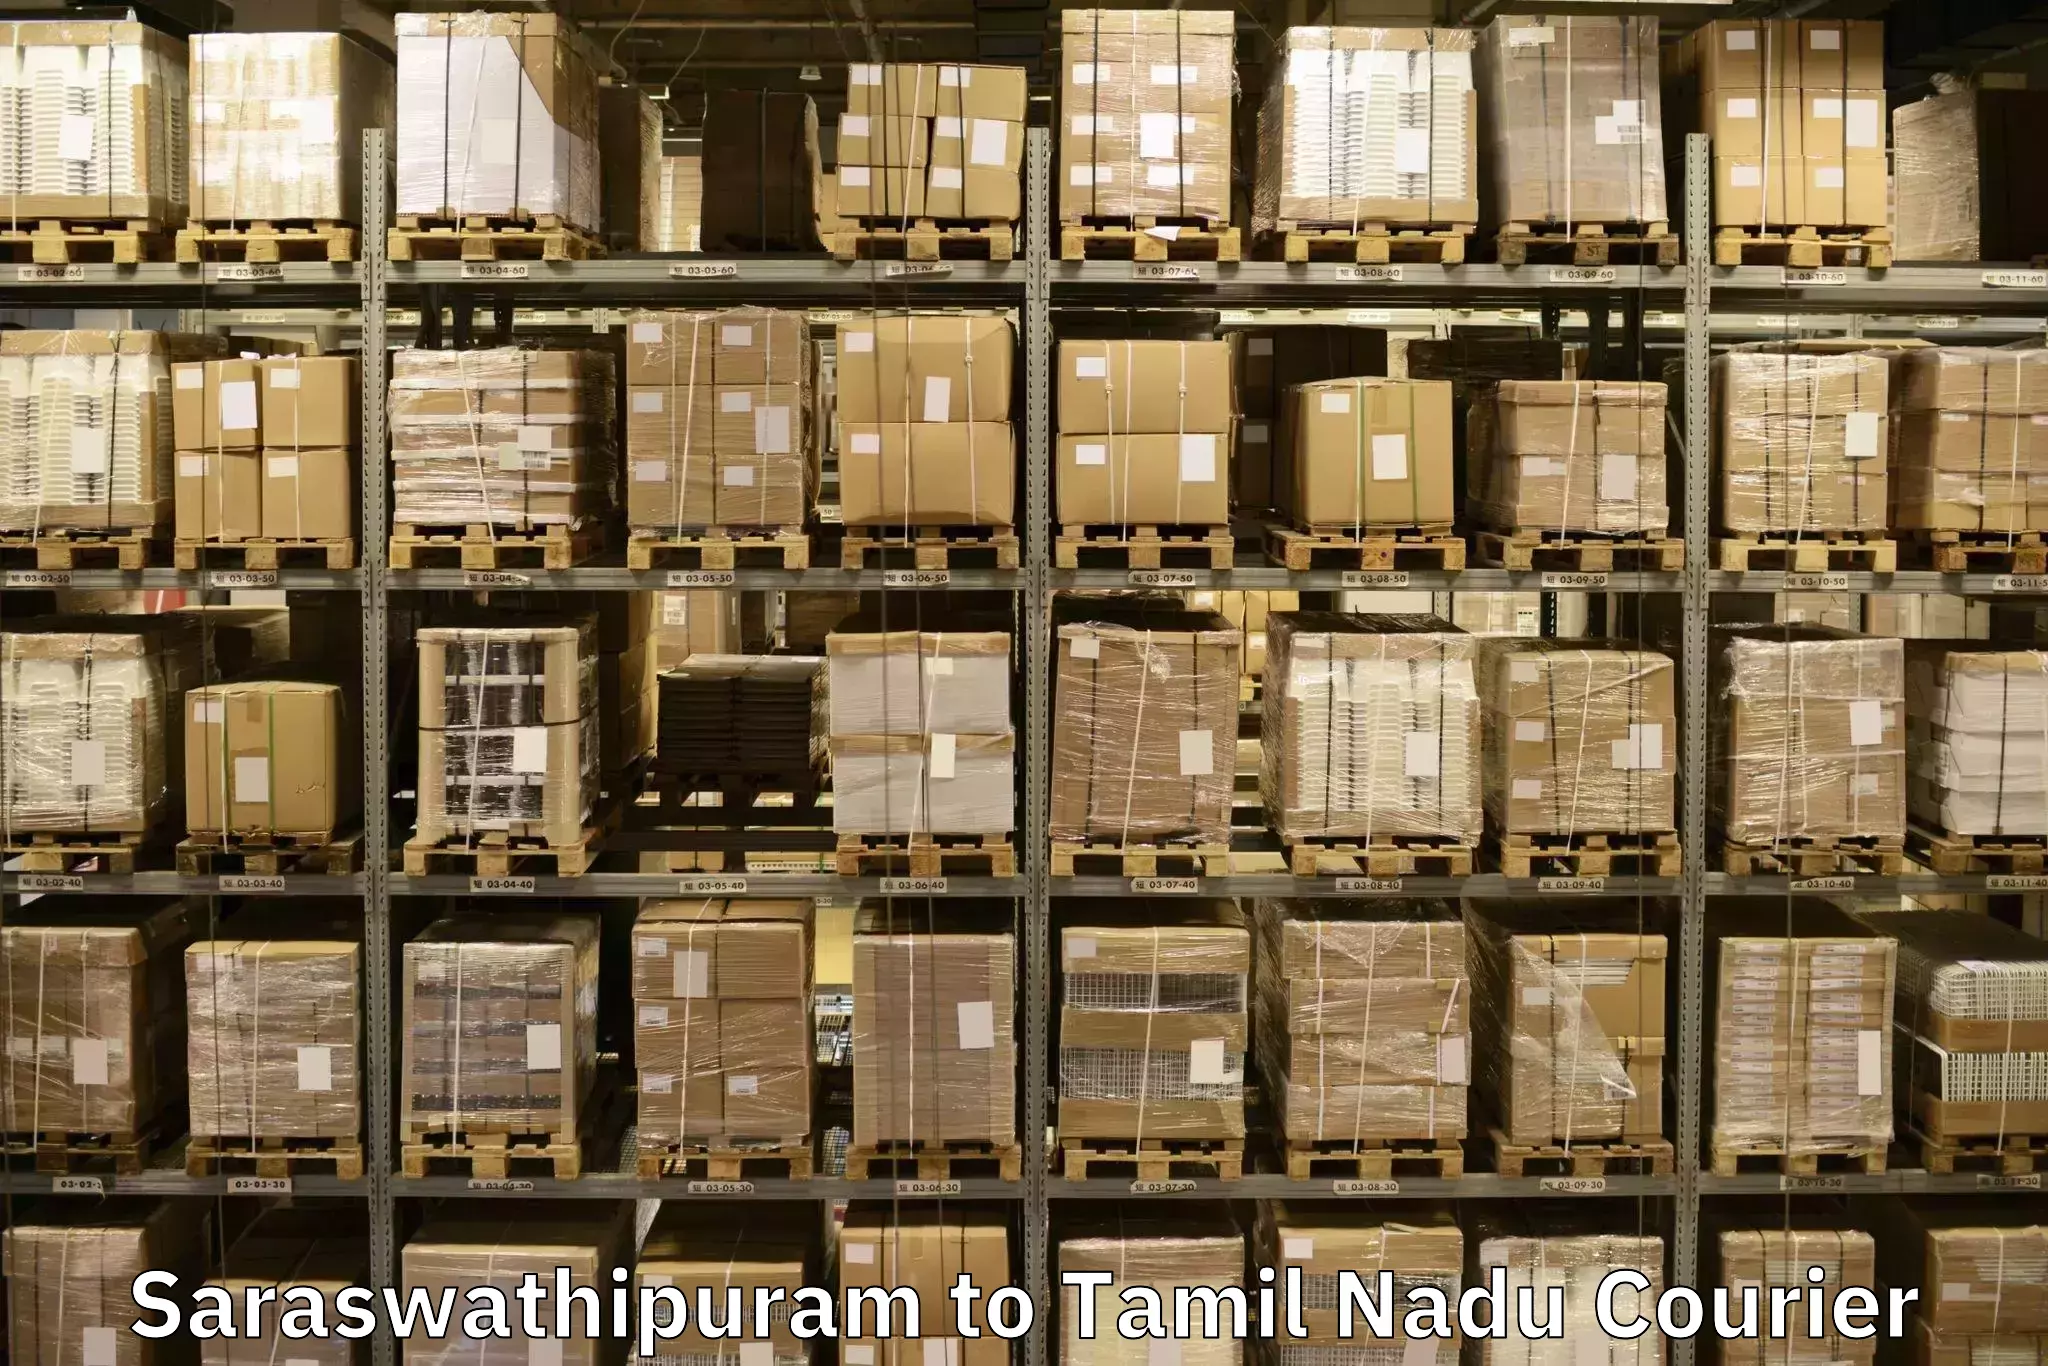 Quality moving company Saraswathipuram to Thondi